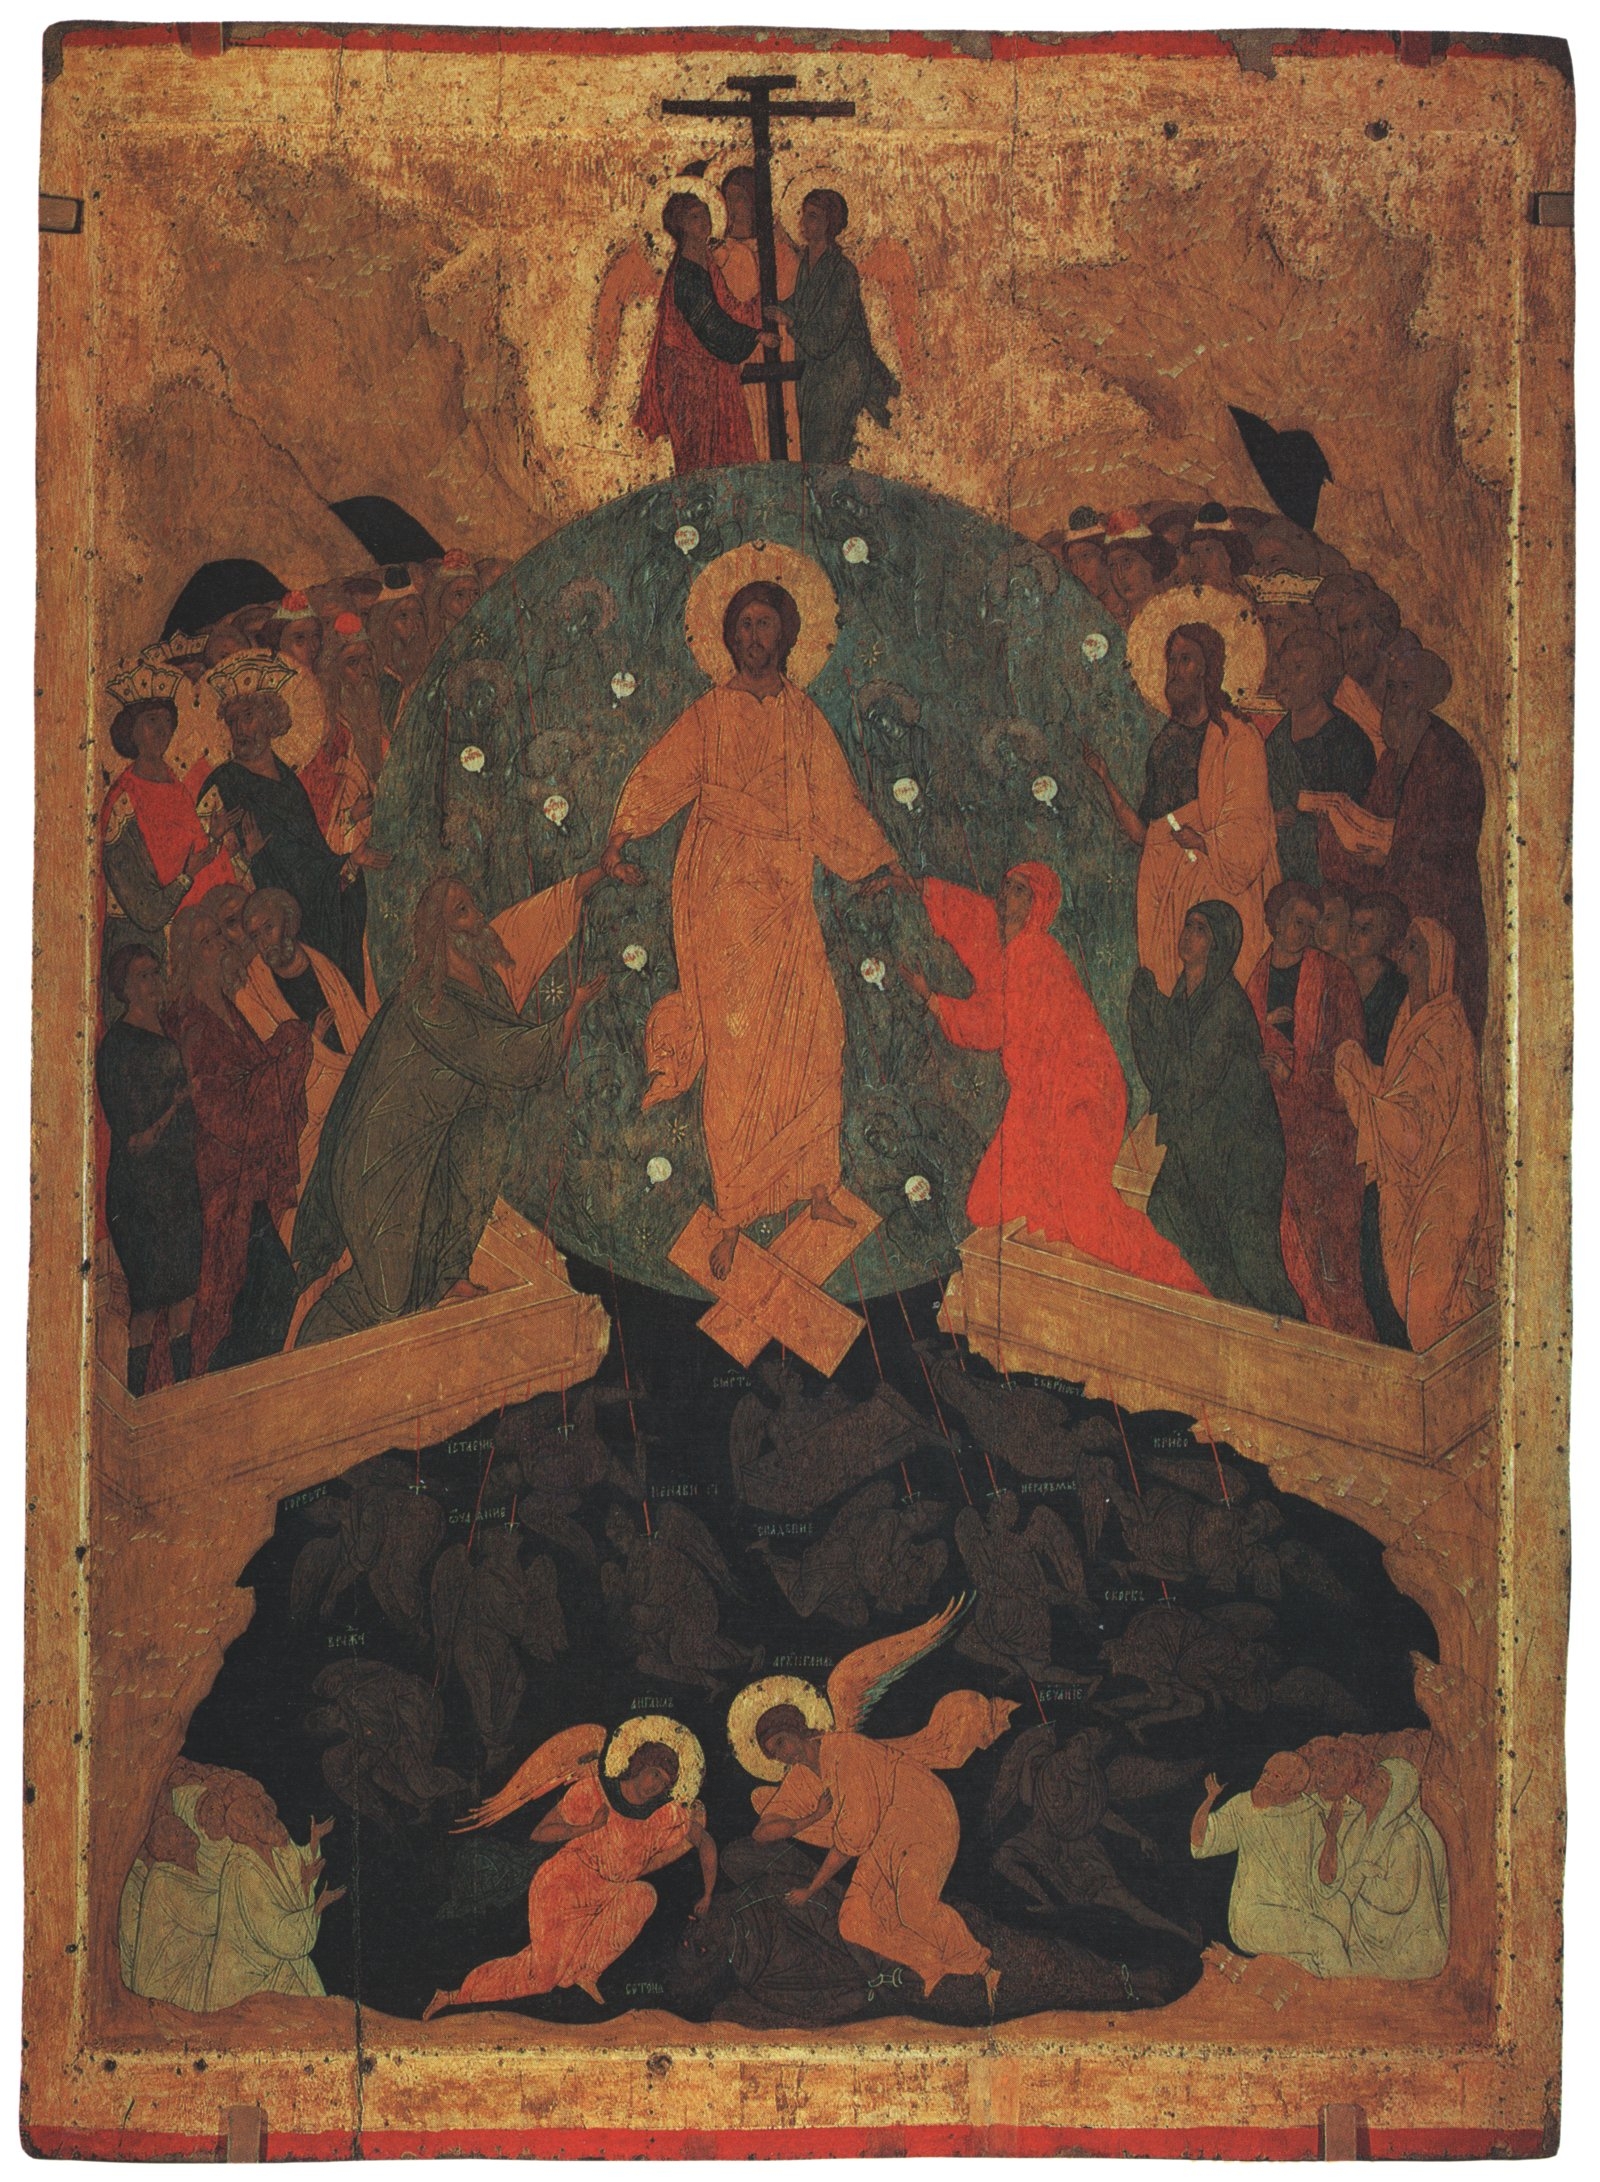 Sestoupení do pekla, ikona, 1495-1504